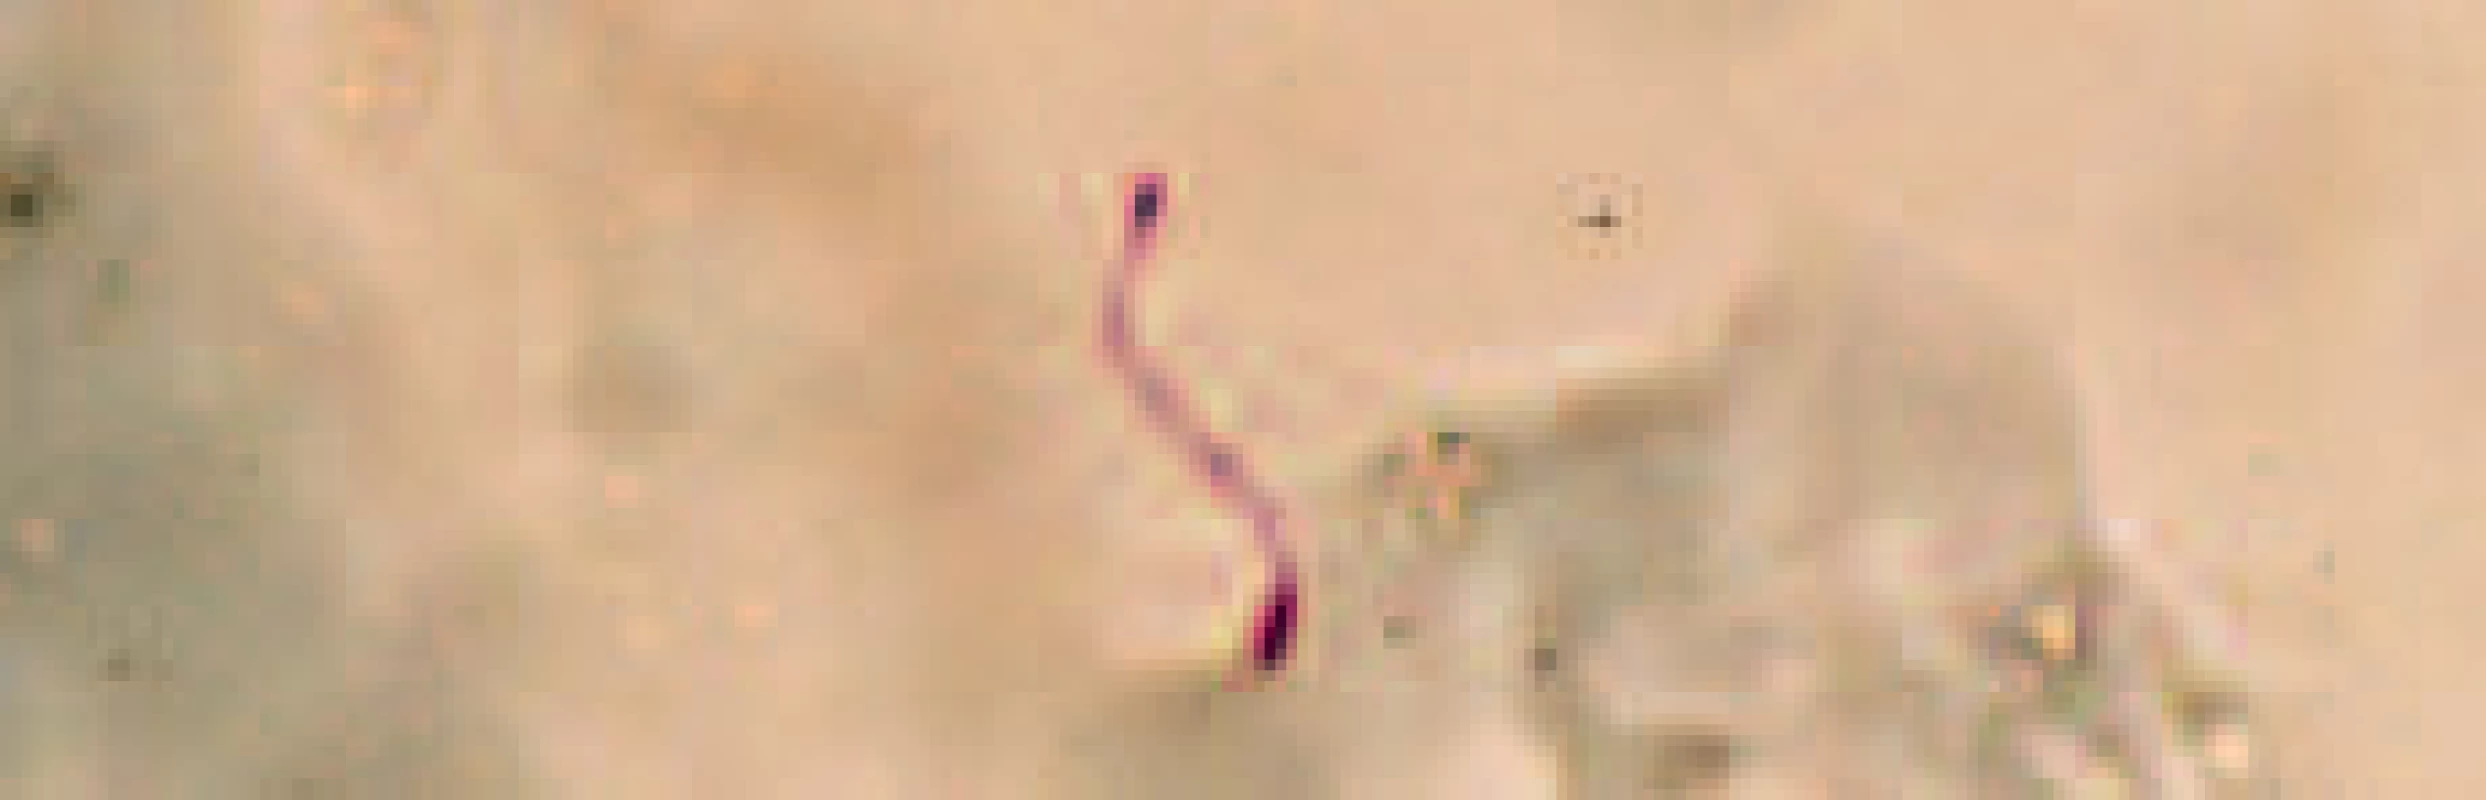 Mikroskopický průkaz M. marinum v excidované tkáni (metoda Ziehl-Neelsen, zvětšeno 650x).
